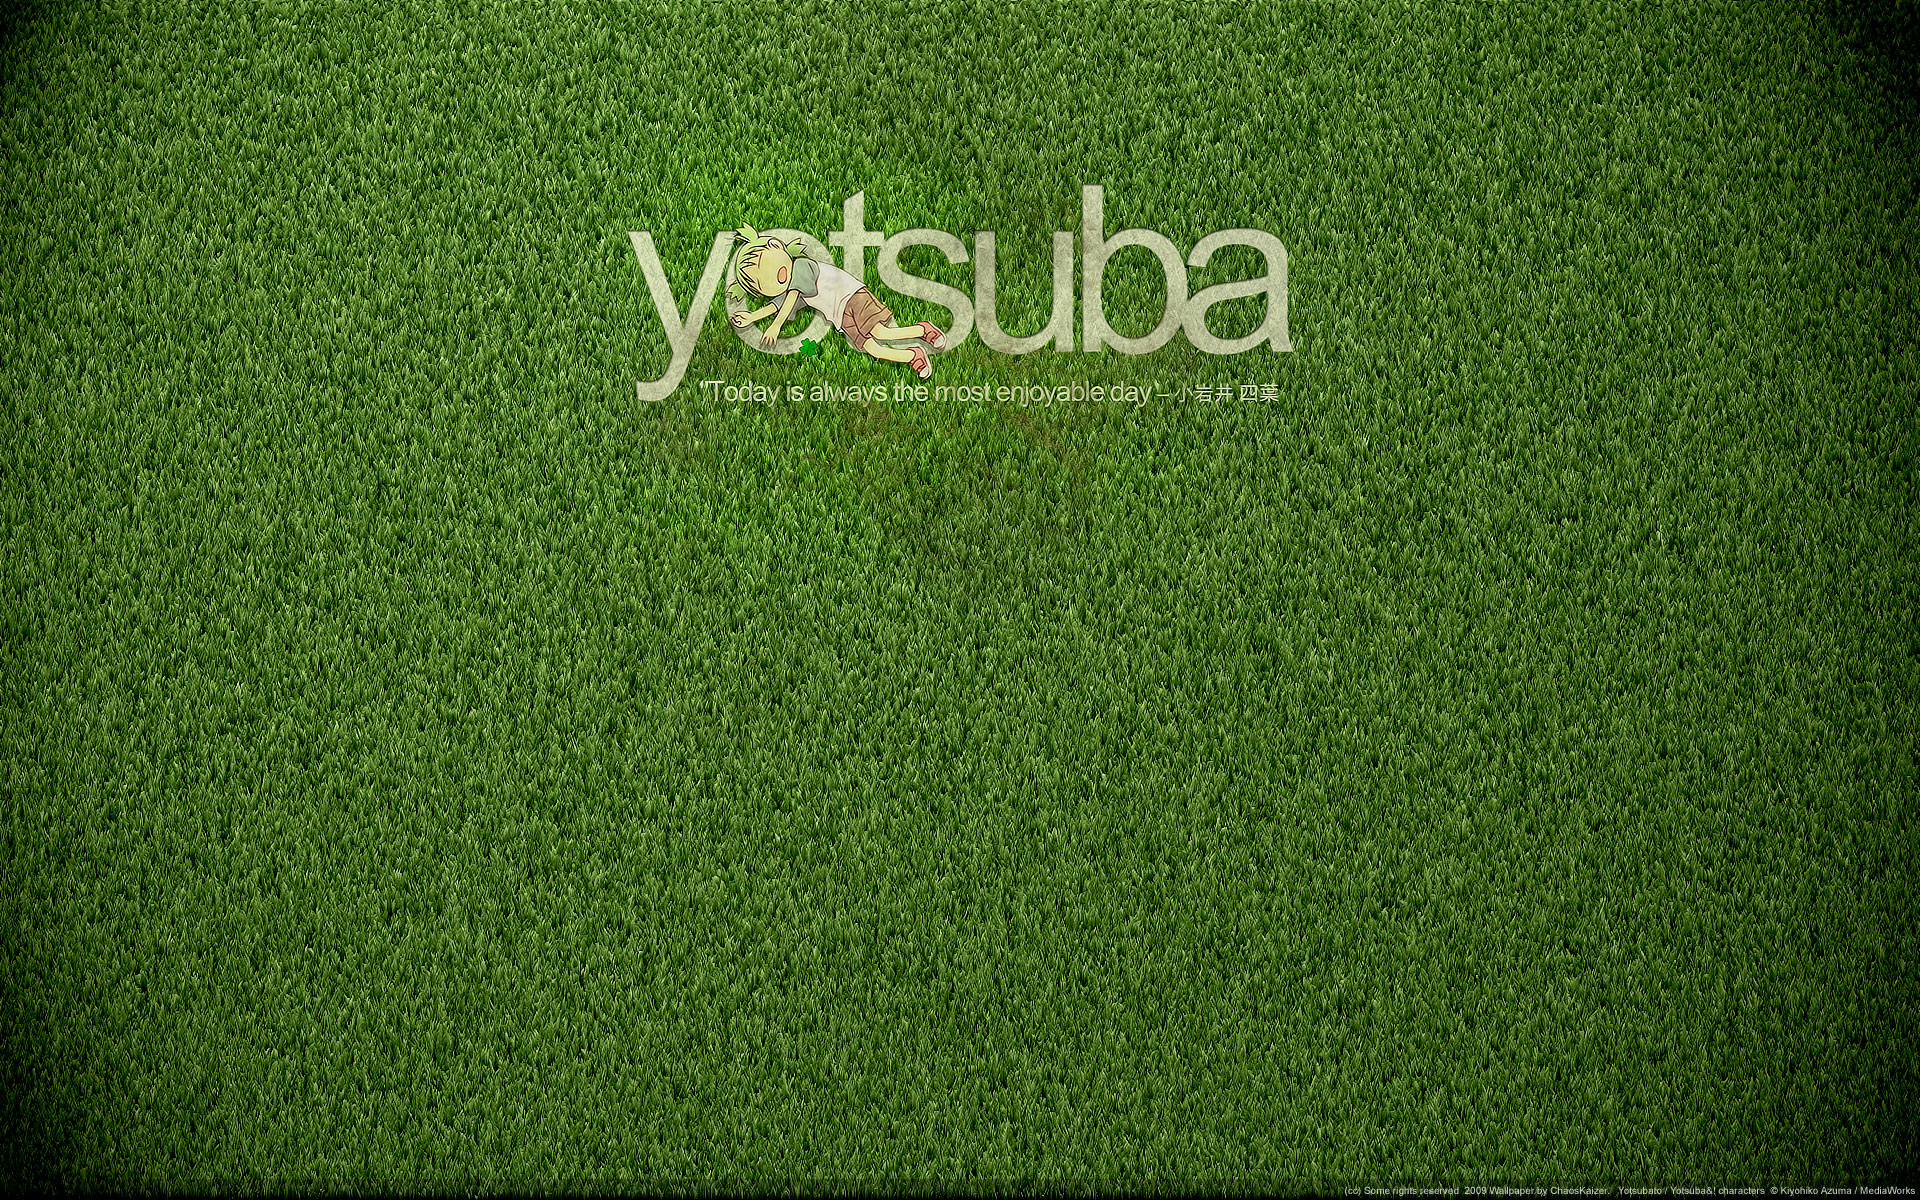 yotsuba!, anime